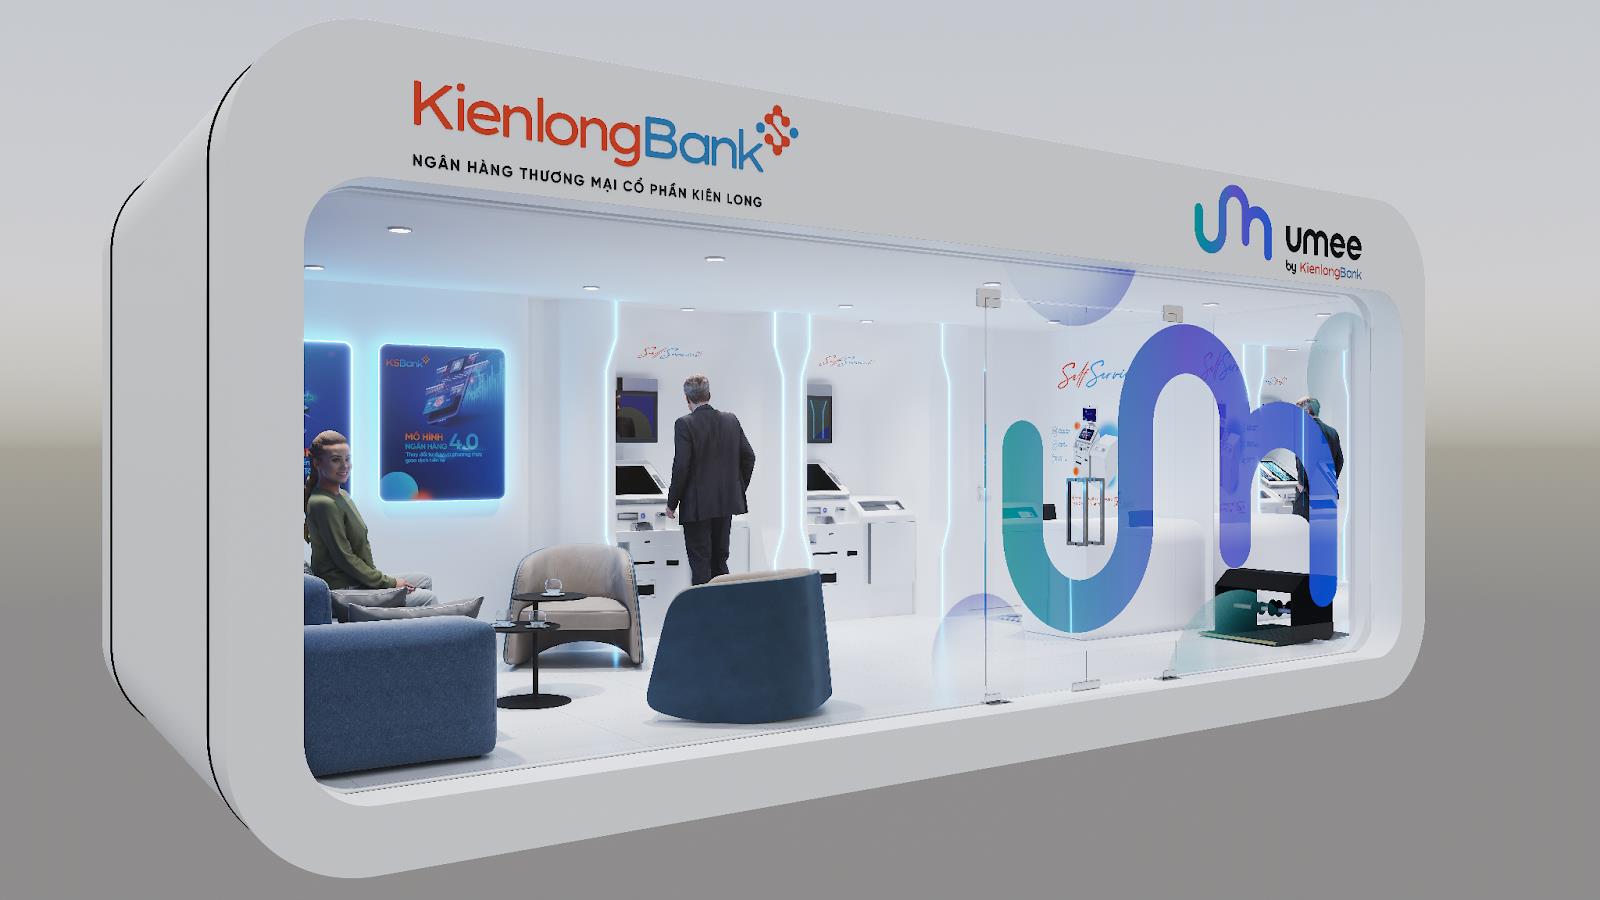 KienlongBank giải bài toán phát triển đường dài bằng chiến lược kinh doanh bền vững - Ảnh 6.